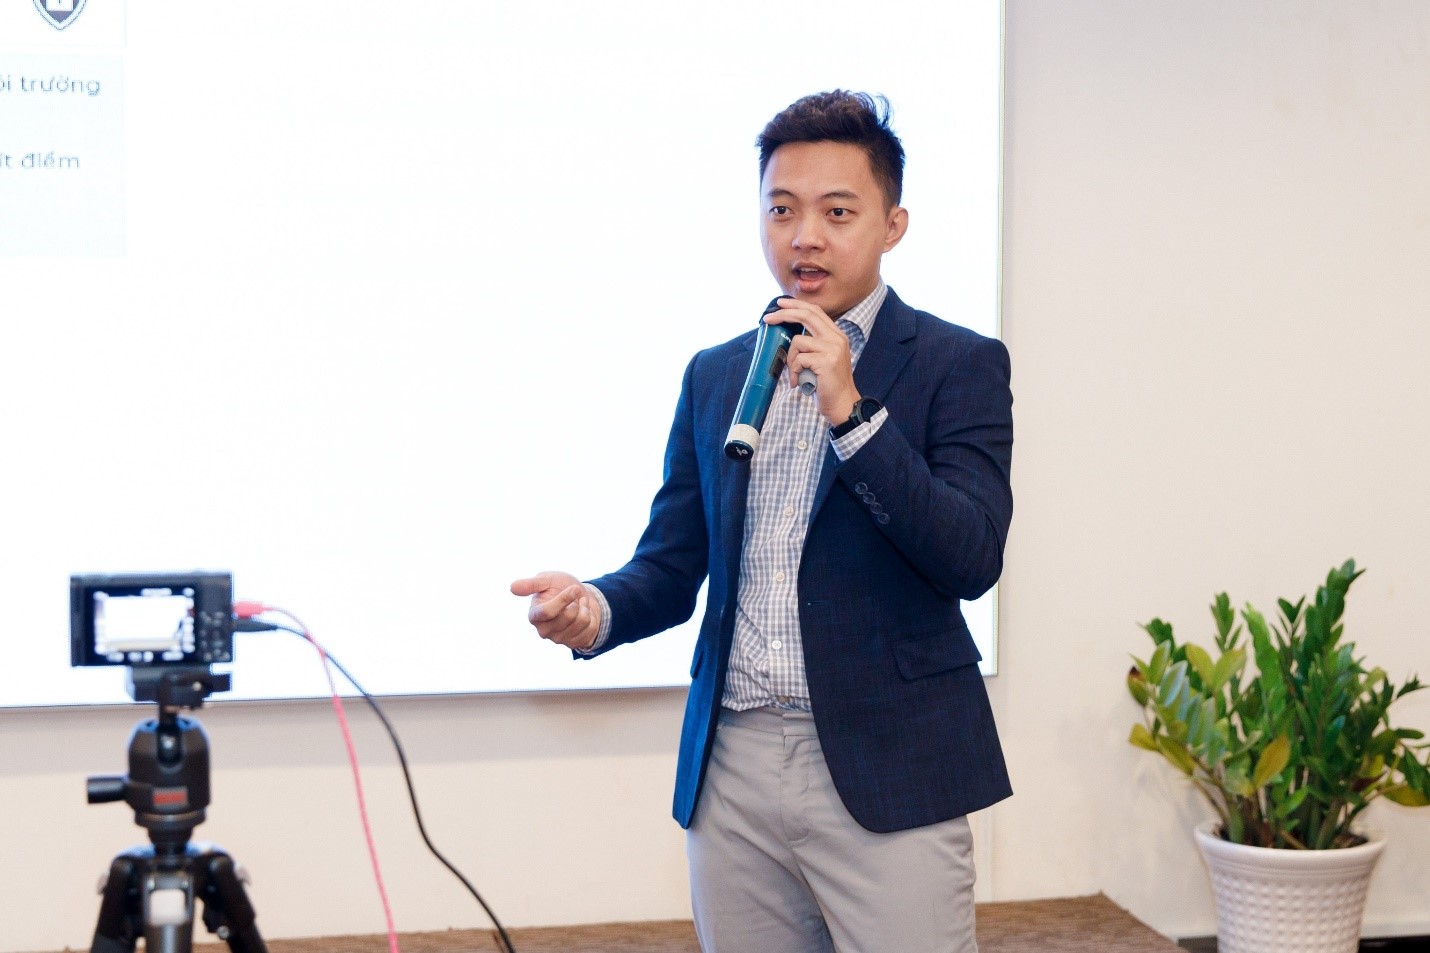 FPT Telecom International, Đối tác Cấp cao của AWS tại Việt Nam ra mắt giải pháp FPT Backup & Replication với cơ cấu định giá cố định cho kiến trúc đám mây lai